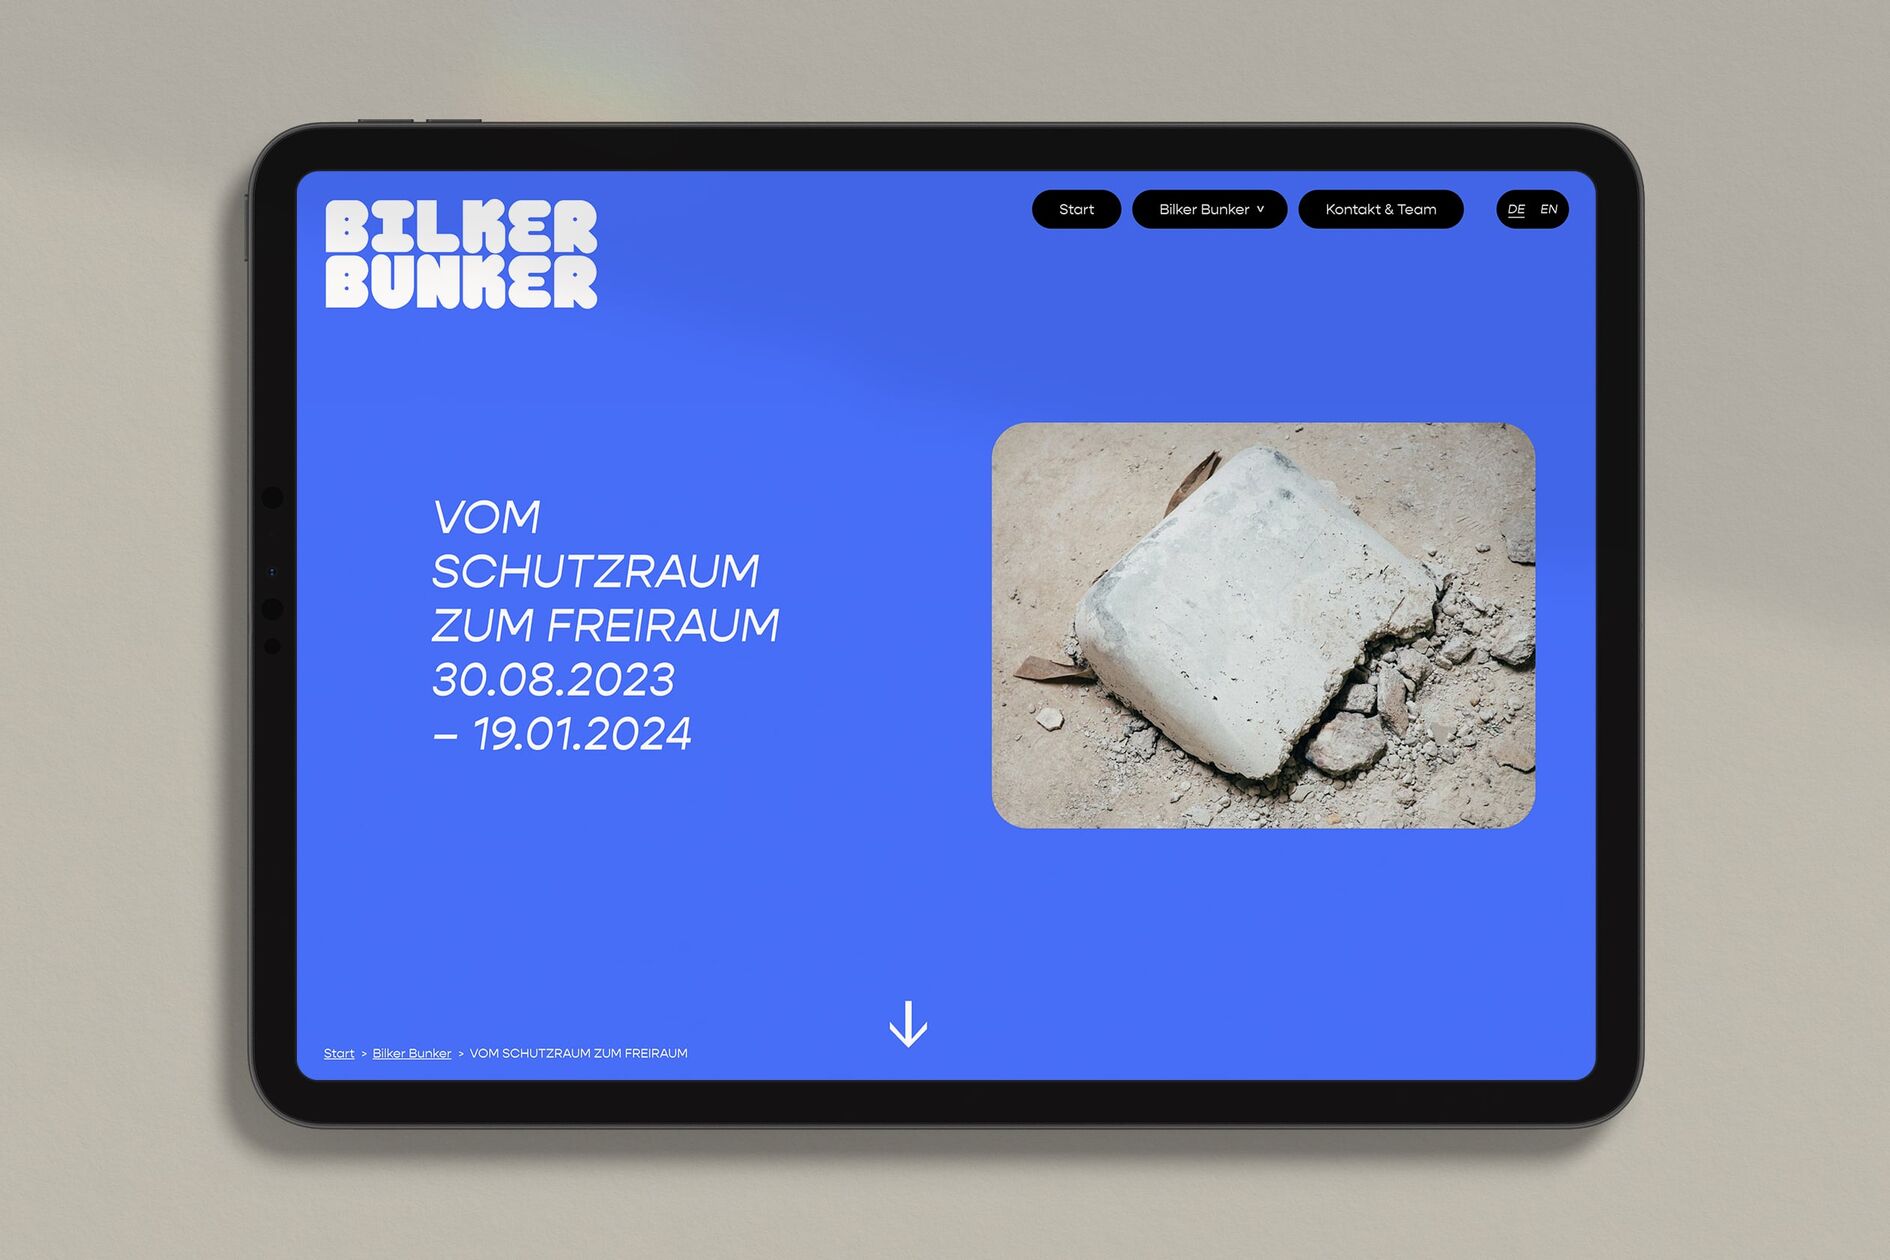 Bilker Bunker Austellung Website Ipad